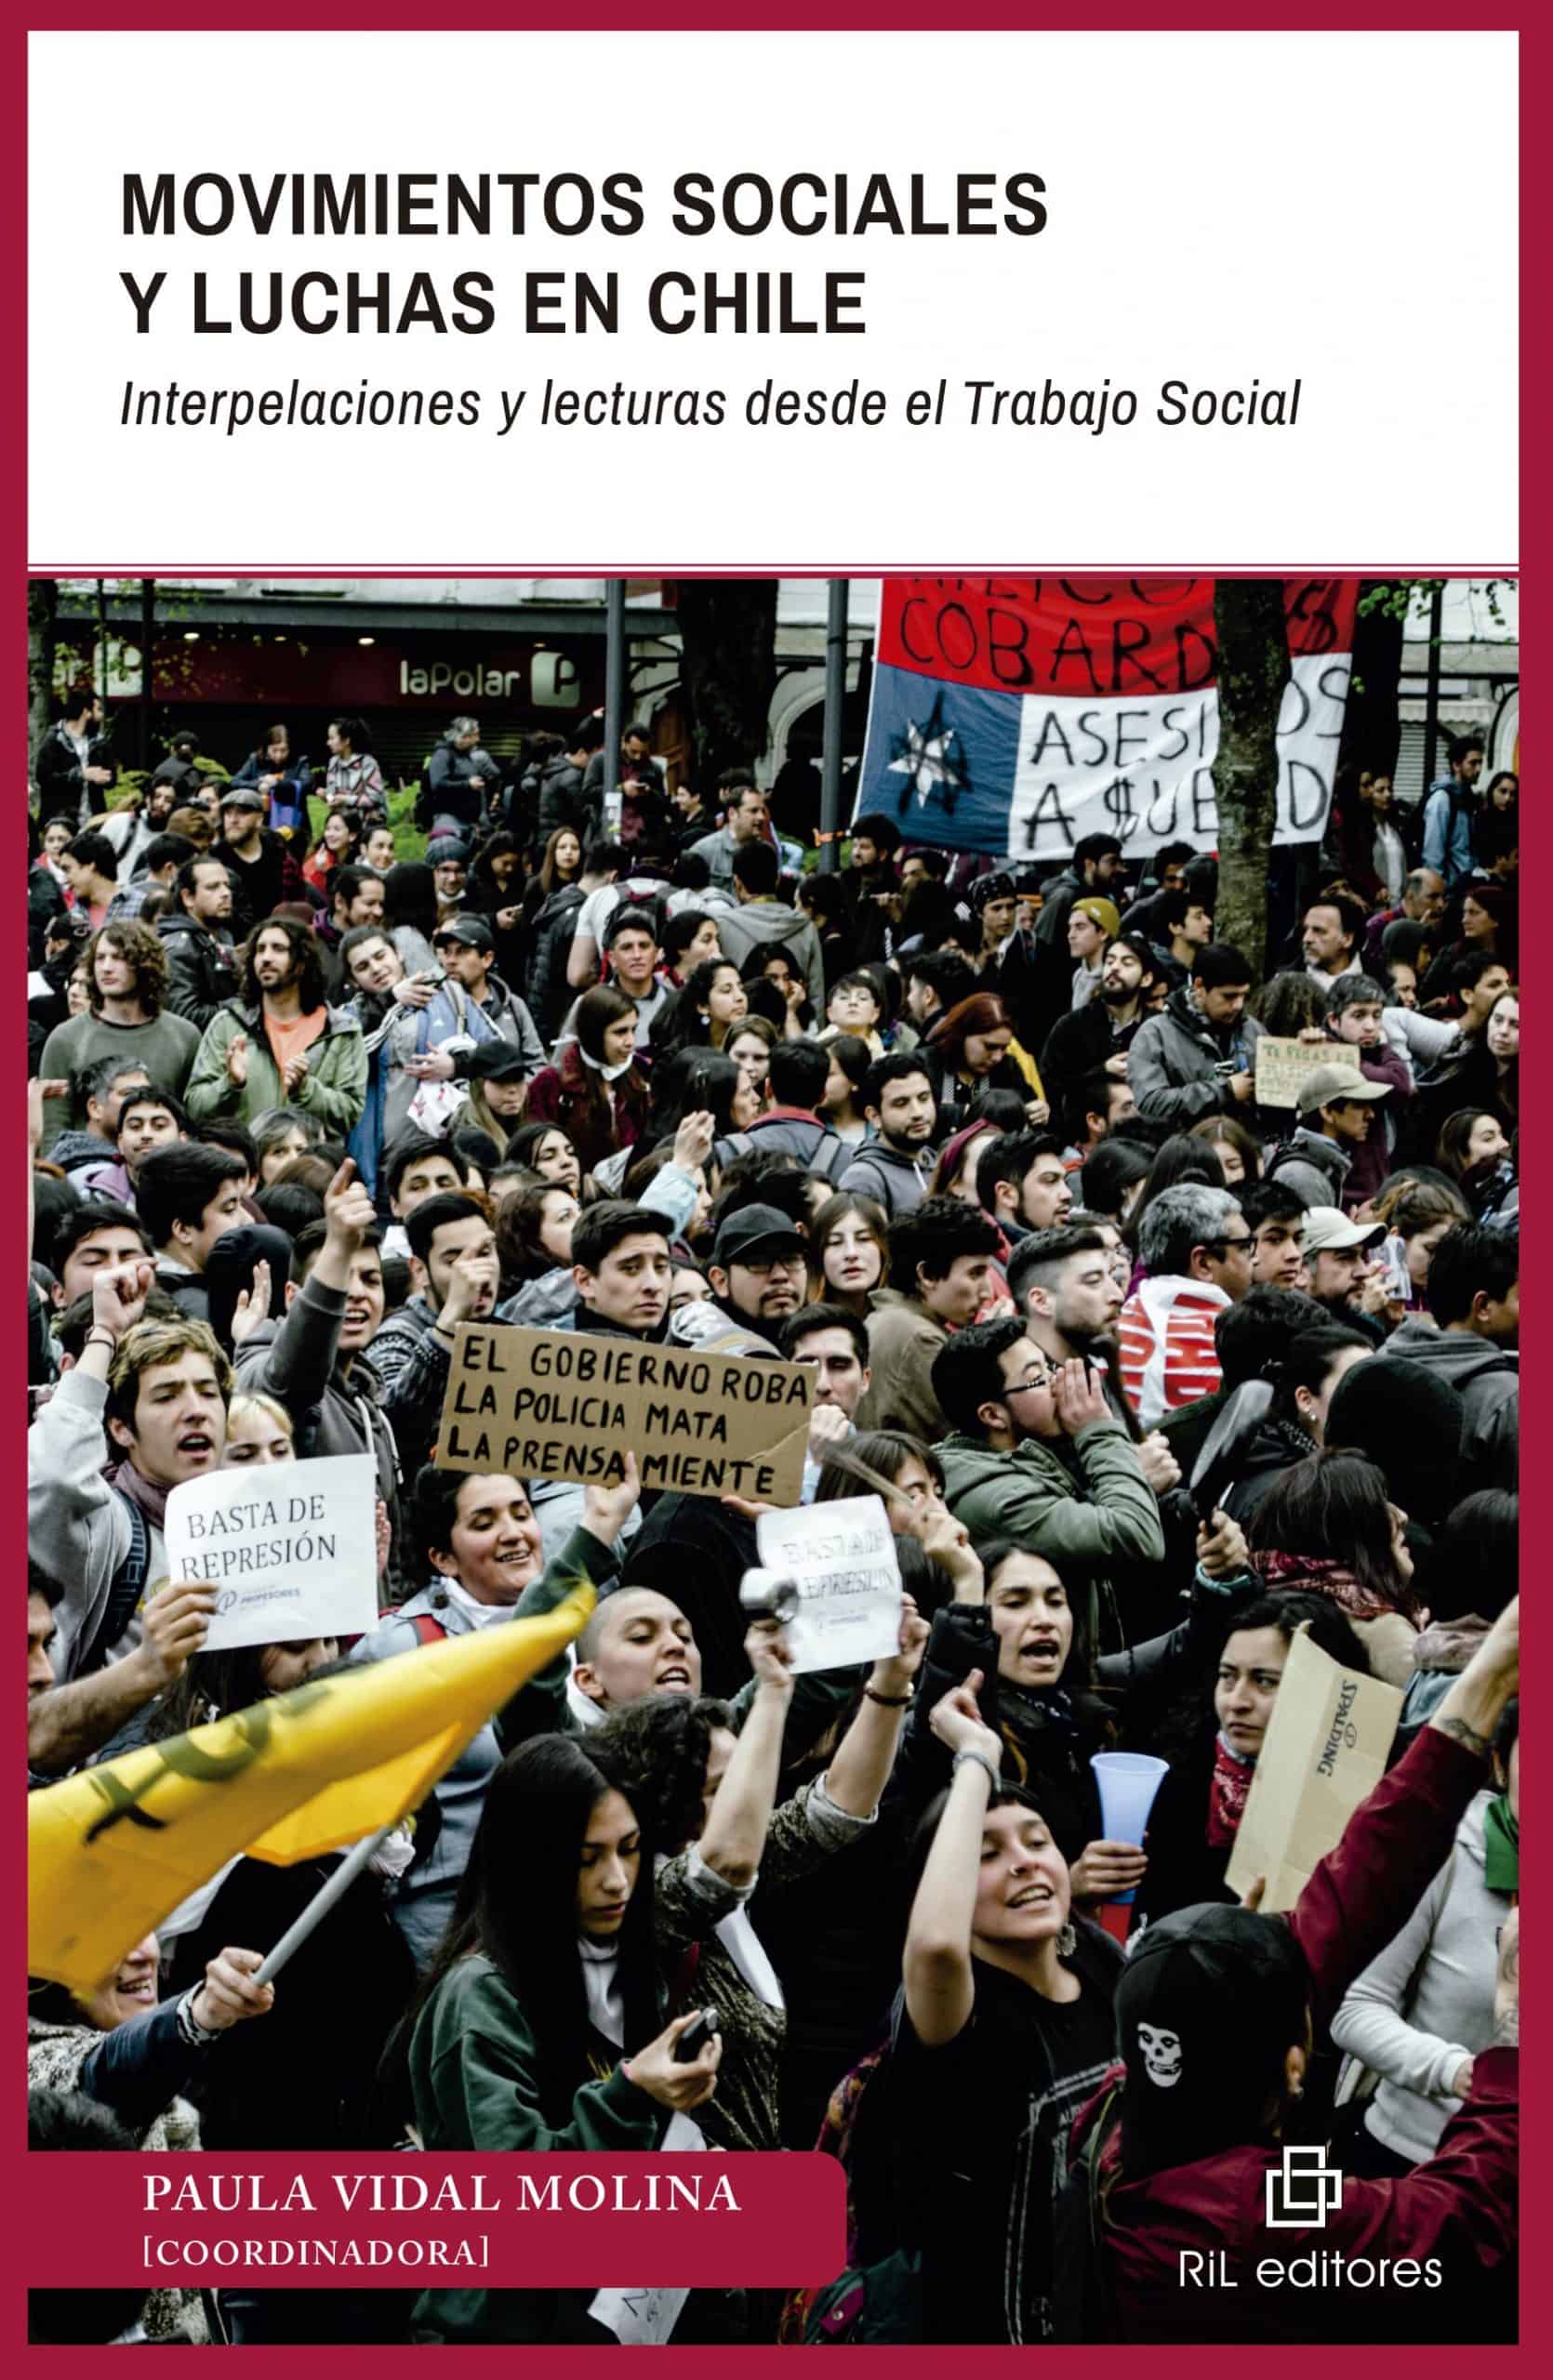 Movimientos sociales y luchas en Chile. Interpelaciones y lecturas desde el Trabajo Social 1